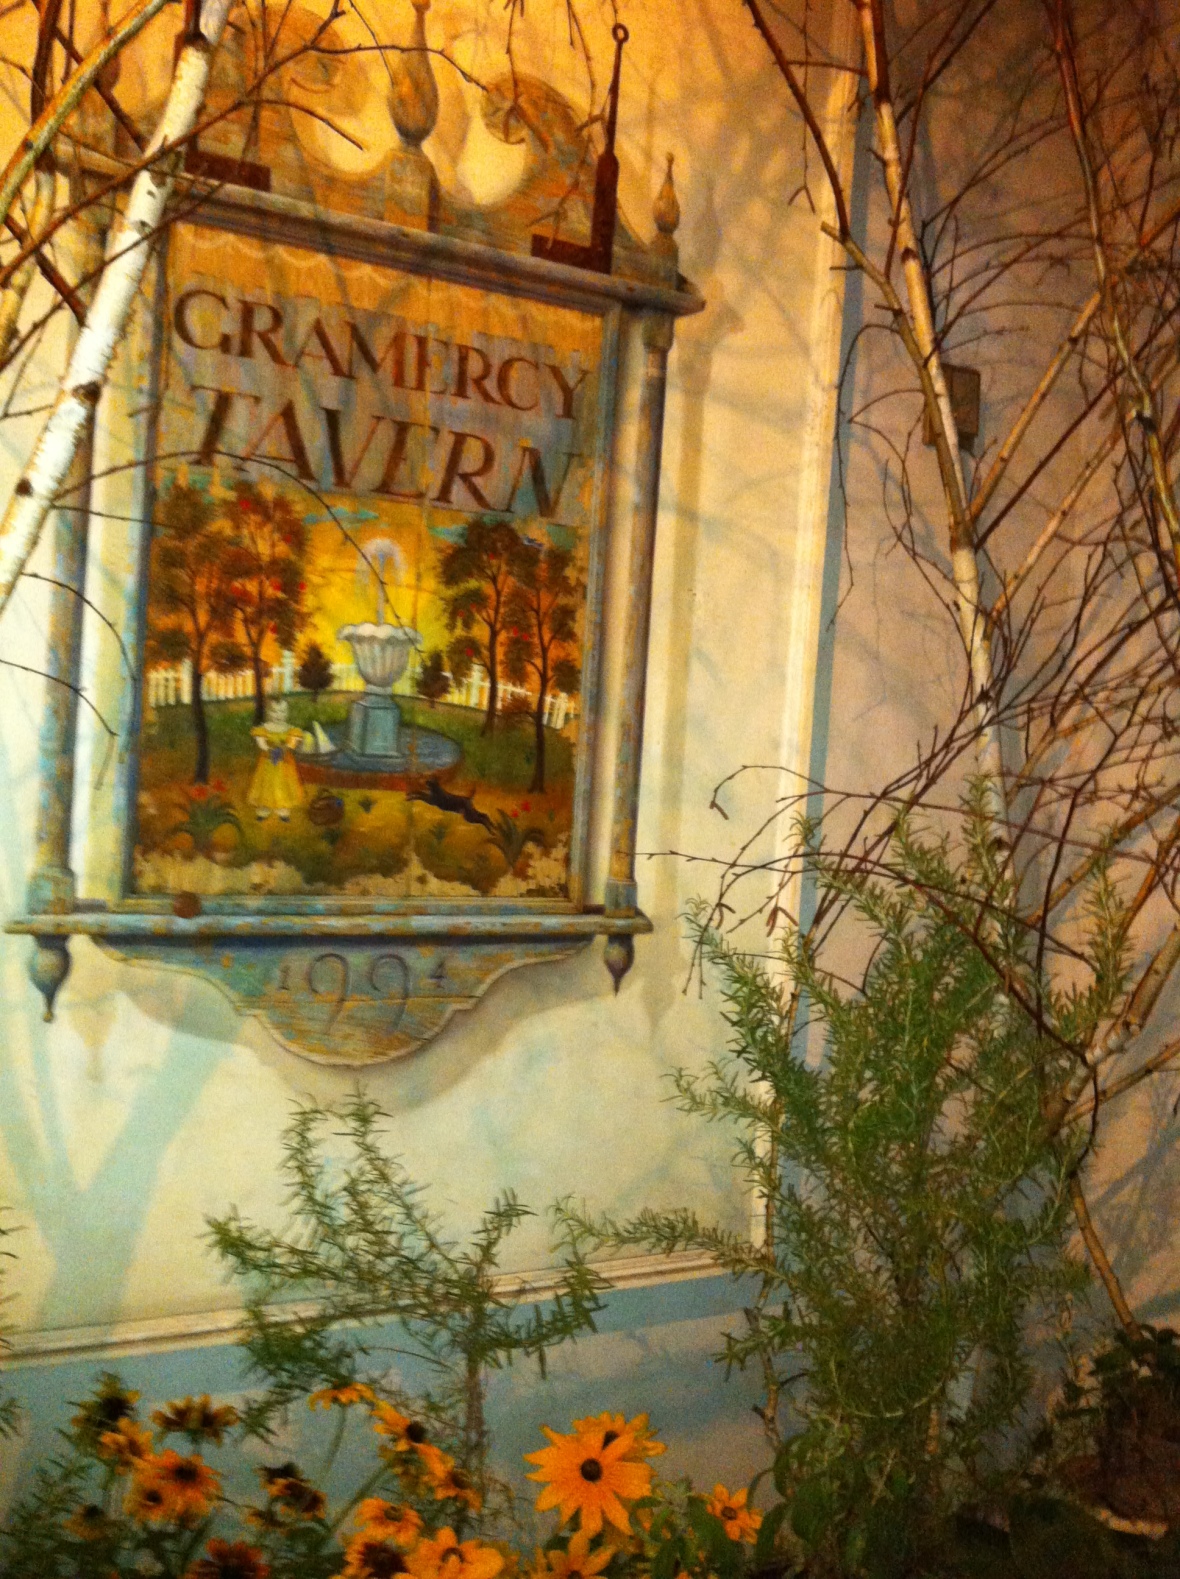 Gramercy Tavern 33